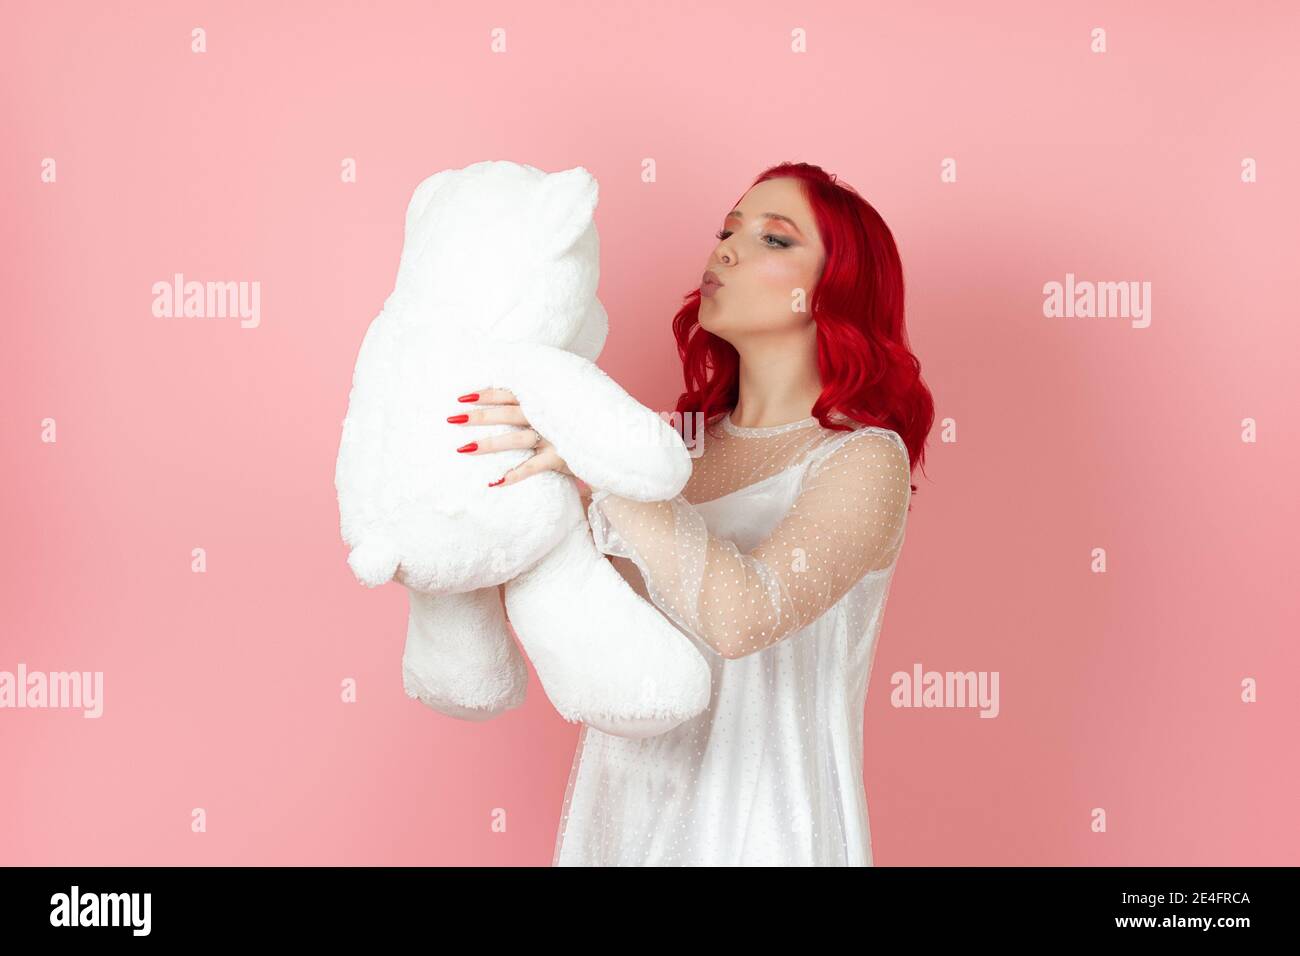 Close-up eine niedliche junge Frau in einem weißen Kleid und Mit roten Haaren bläst einen Kuss auf ein großes Weiß teddybär isoliert auf einem rosa Hintergrund Stockfoto